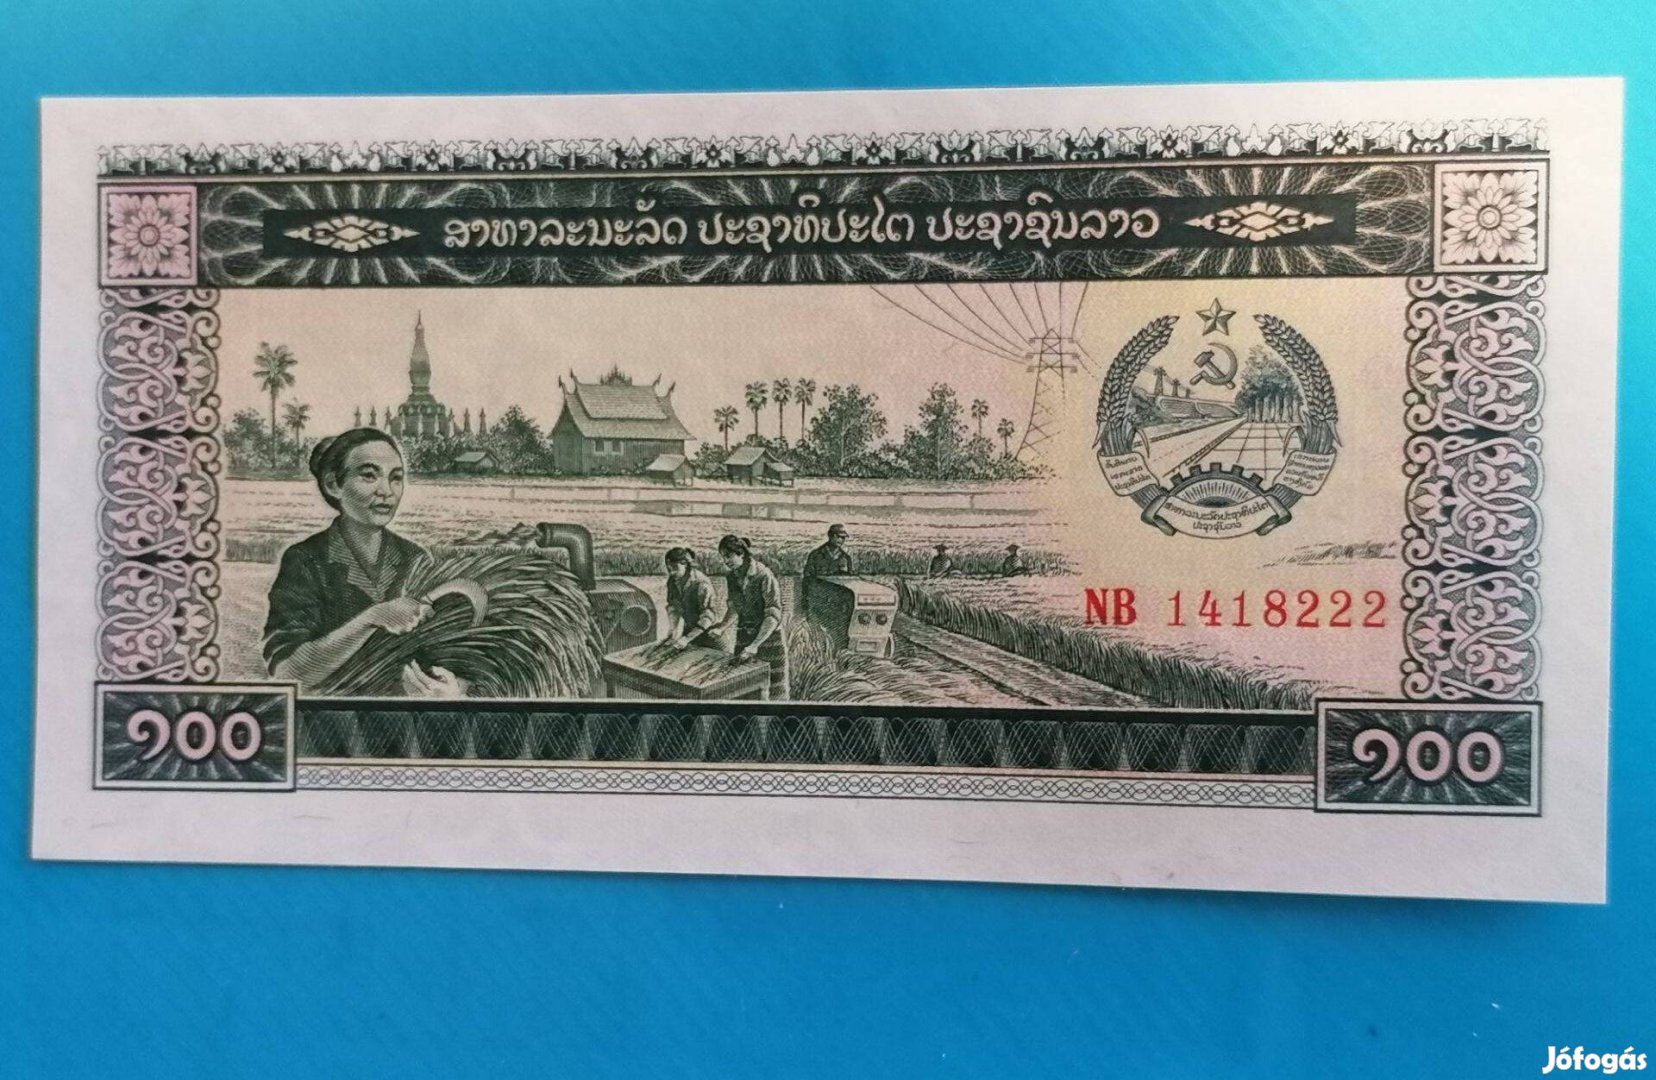 Gyűjtőknek szép, hajtatlan 1979-es Laosz 100 Kip papírpénz eladó